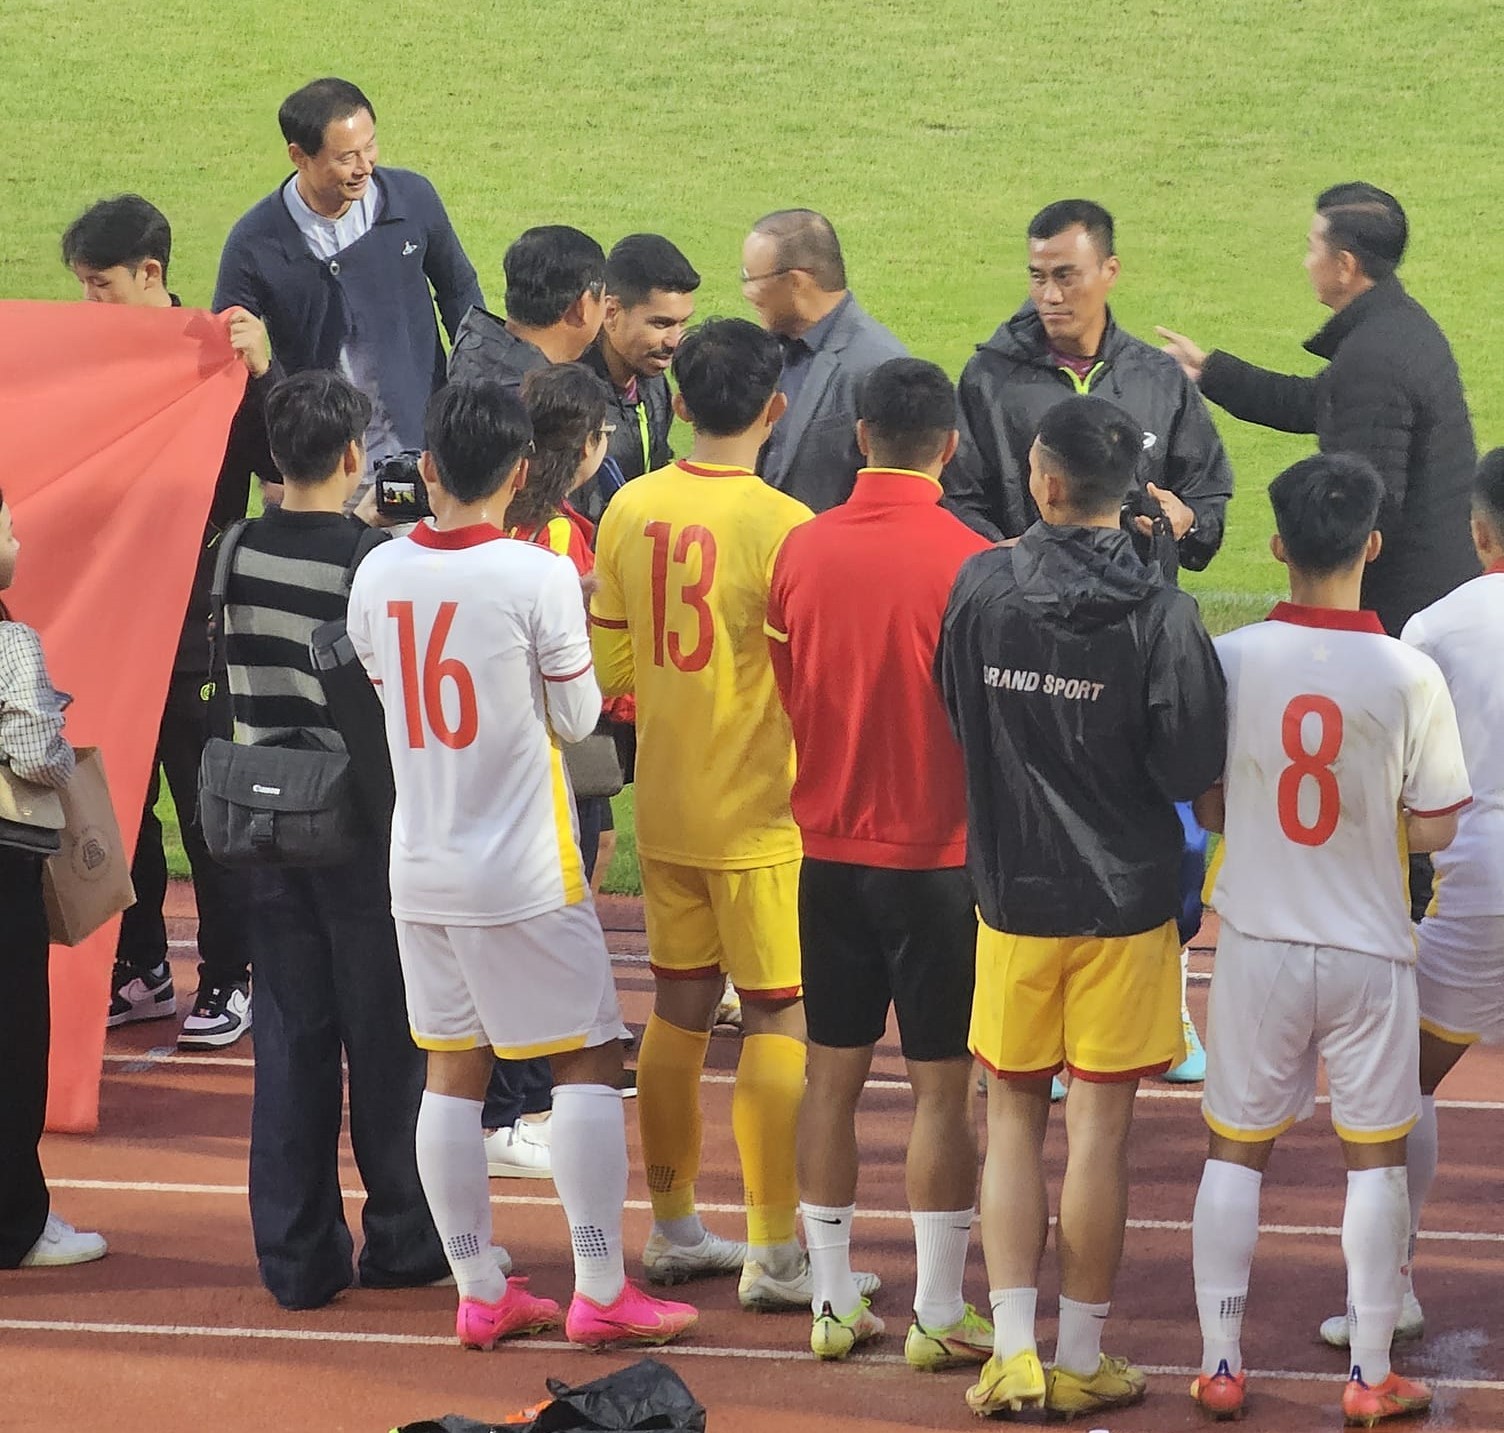 HLV Park Hang-seo làm điều bất ngờ khi U18 Việt Nam gặp U18 Hàn Quốc - Ảnh 2.